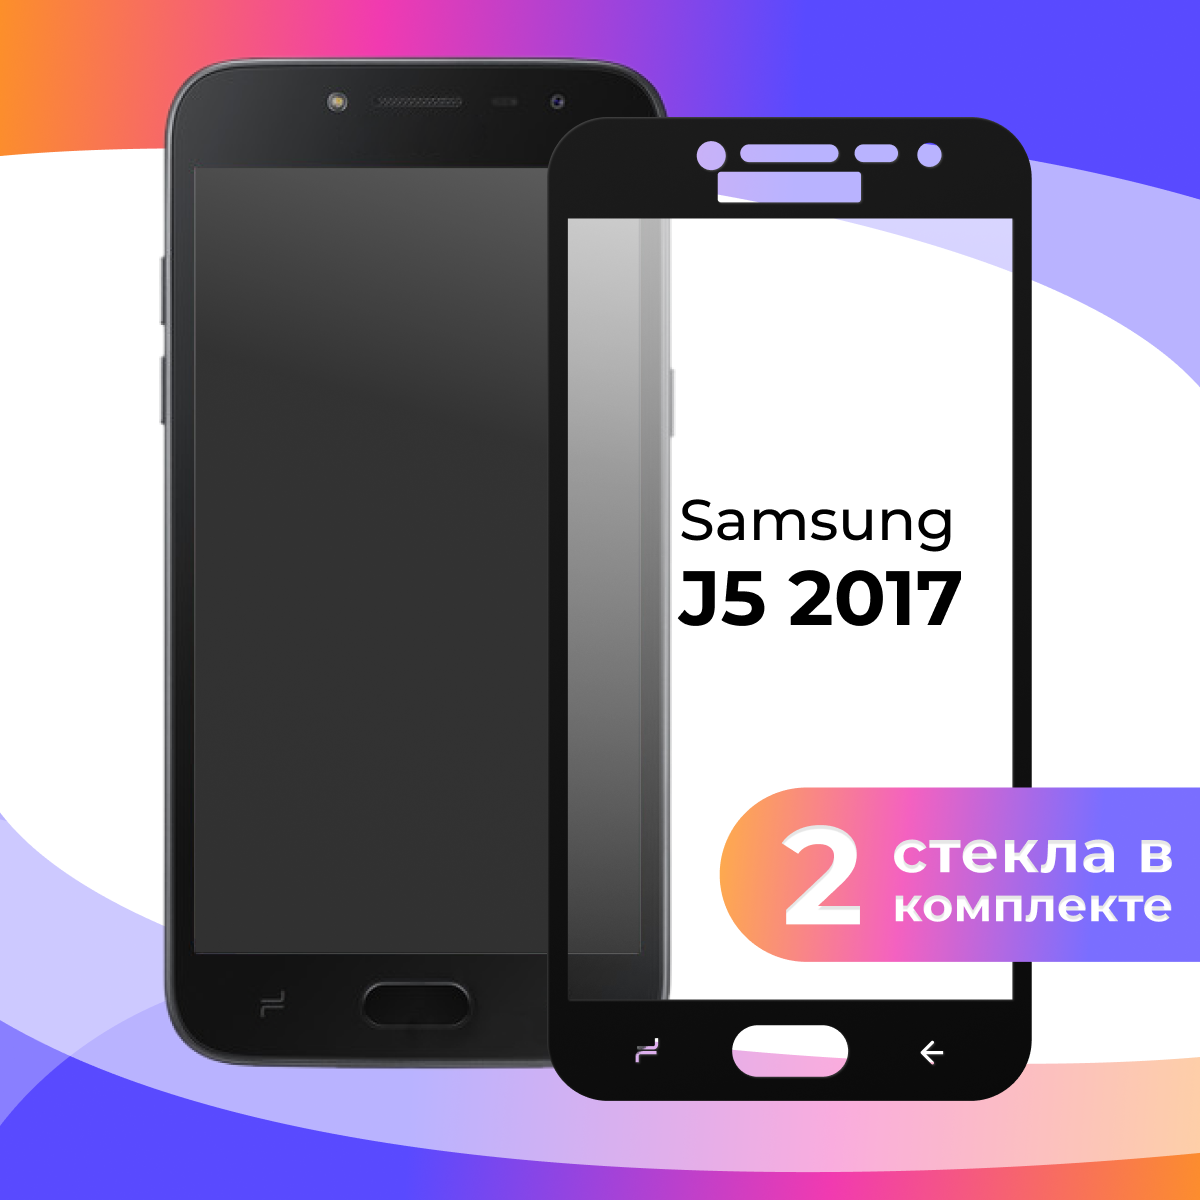 Комплект 2 шт. Защитное стекло для телефона Samsung Galaxy J5 2017 / Глянцевое противоударное стекло с олеофобным покрытием на смартфон Самсунг Галакси Джи 5 2017